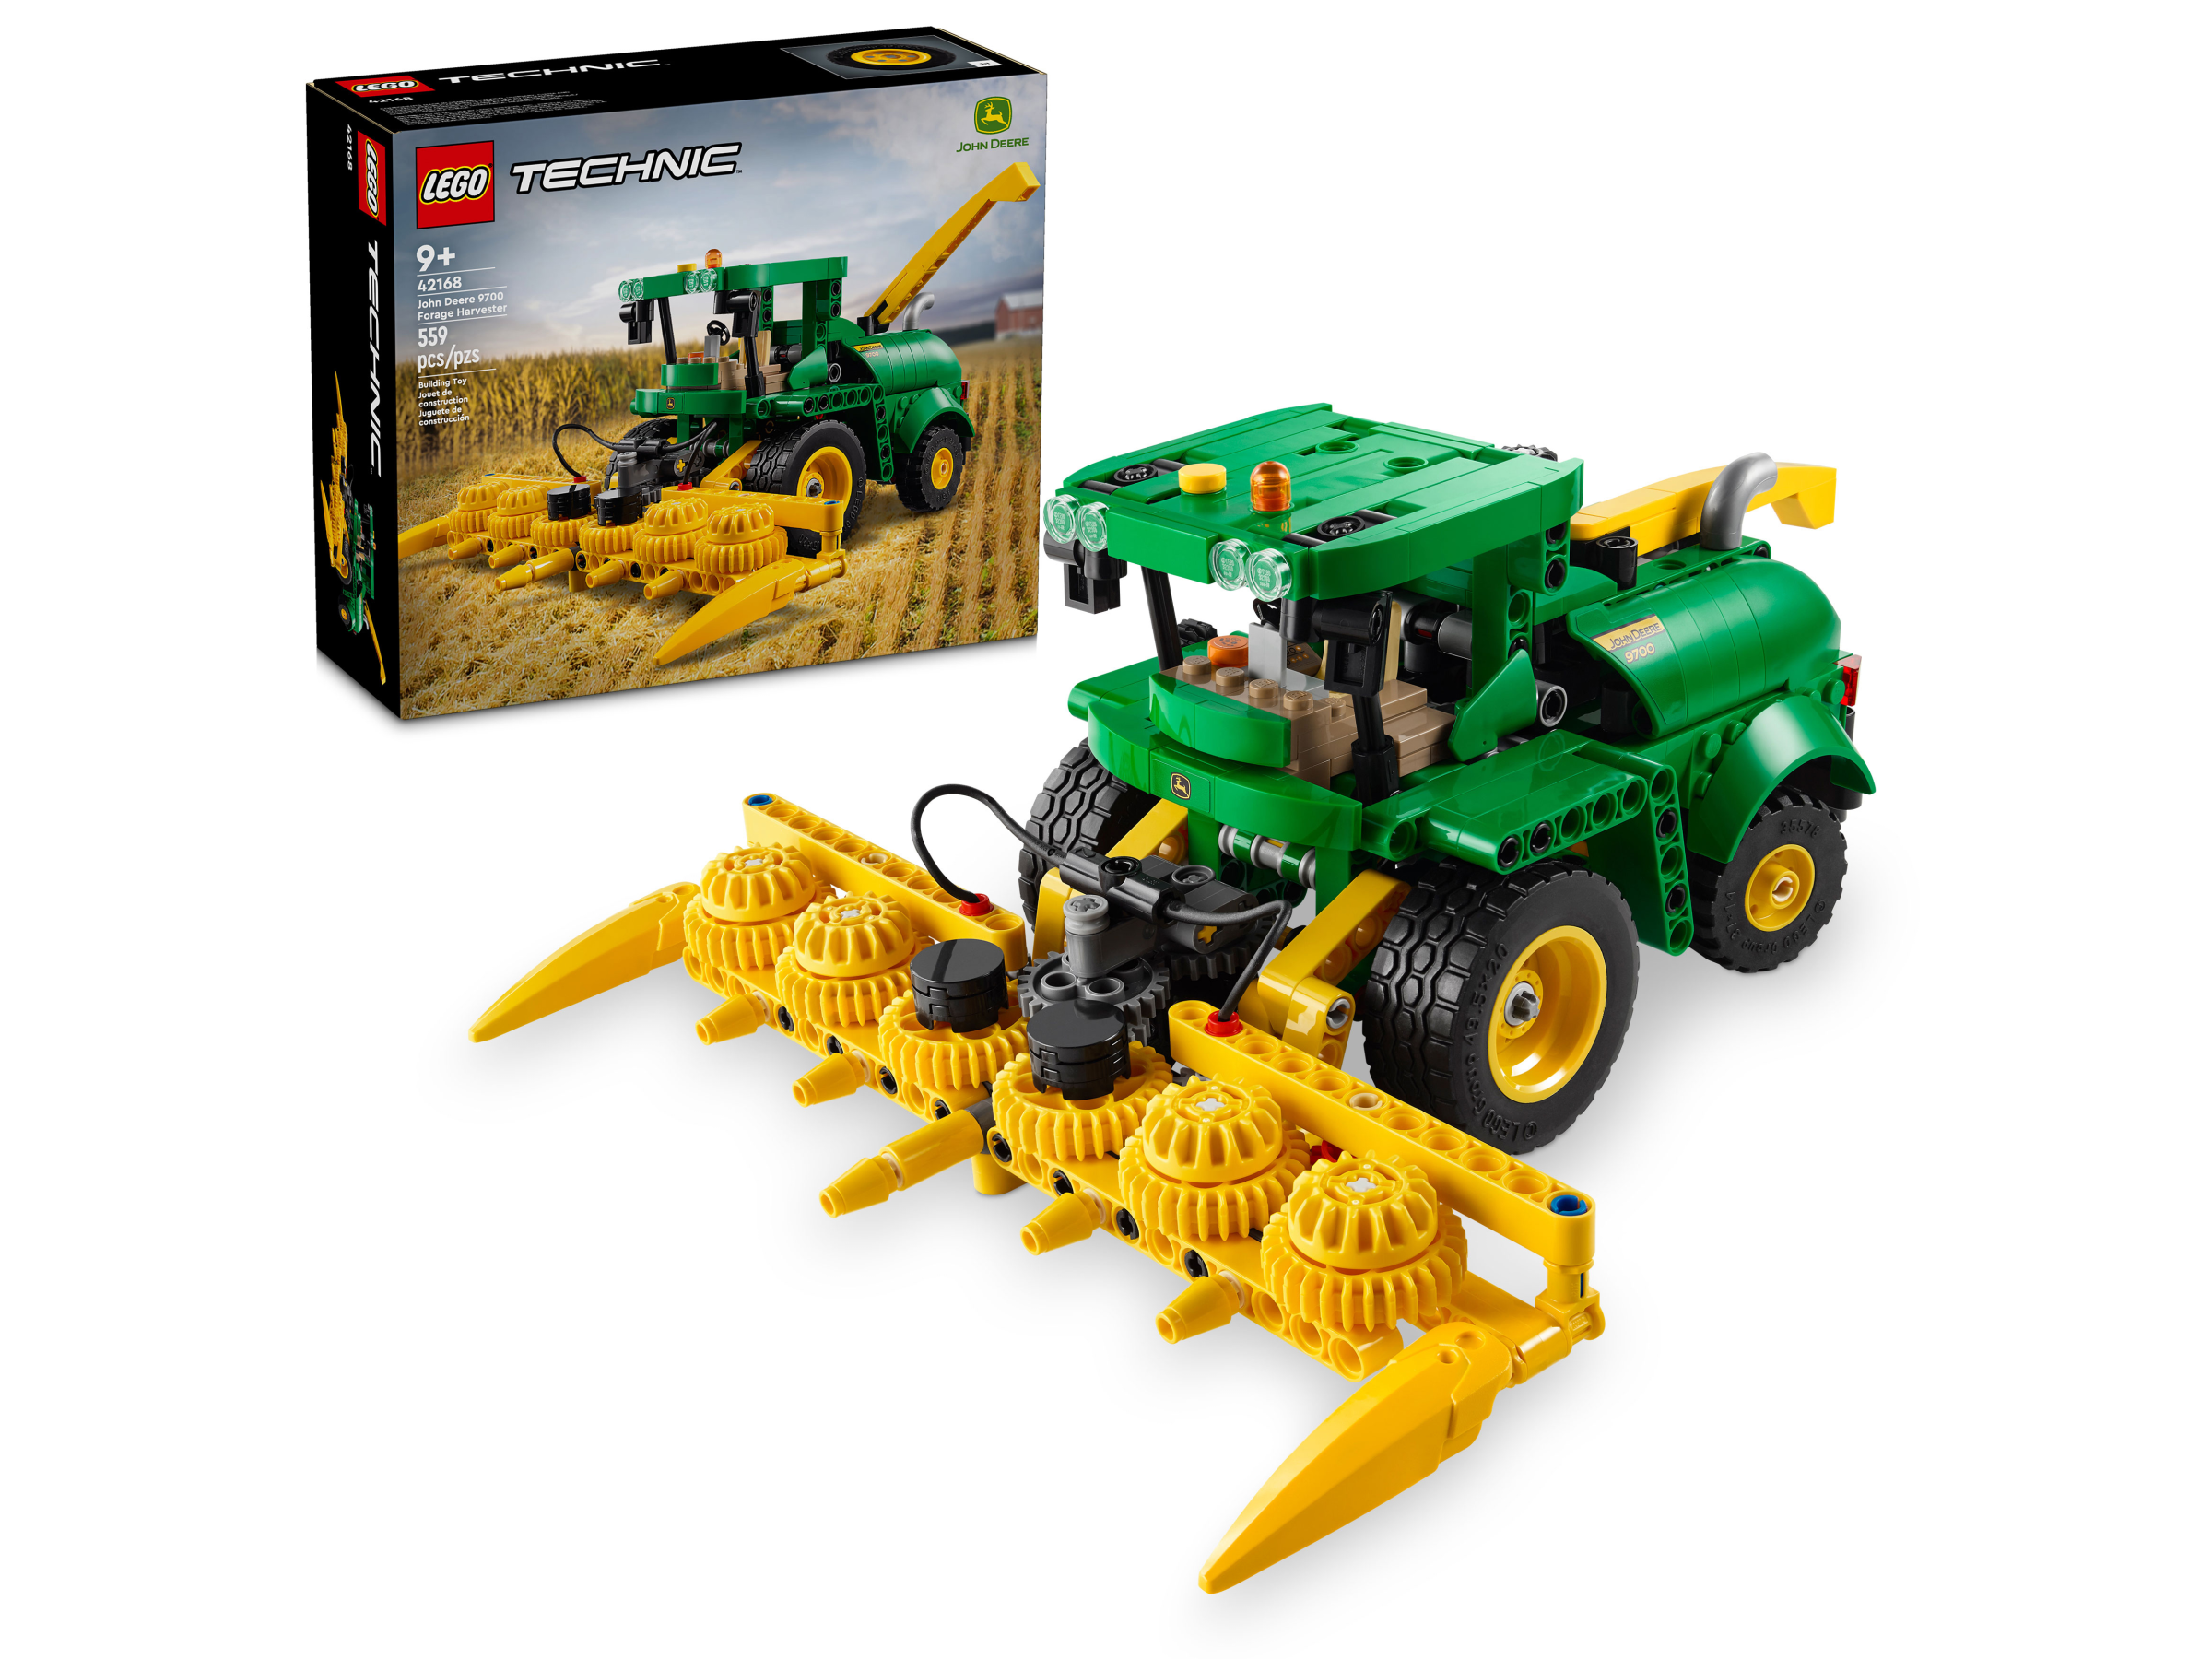 John Deere 9700 Forage Harvester - Videos - LEGO.com for kids